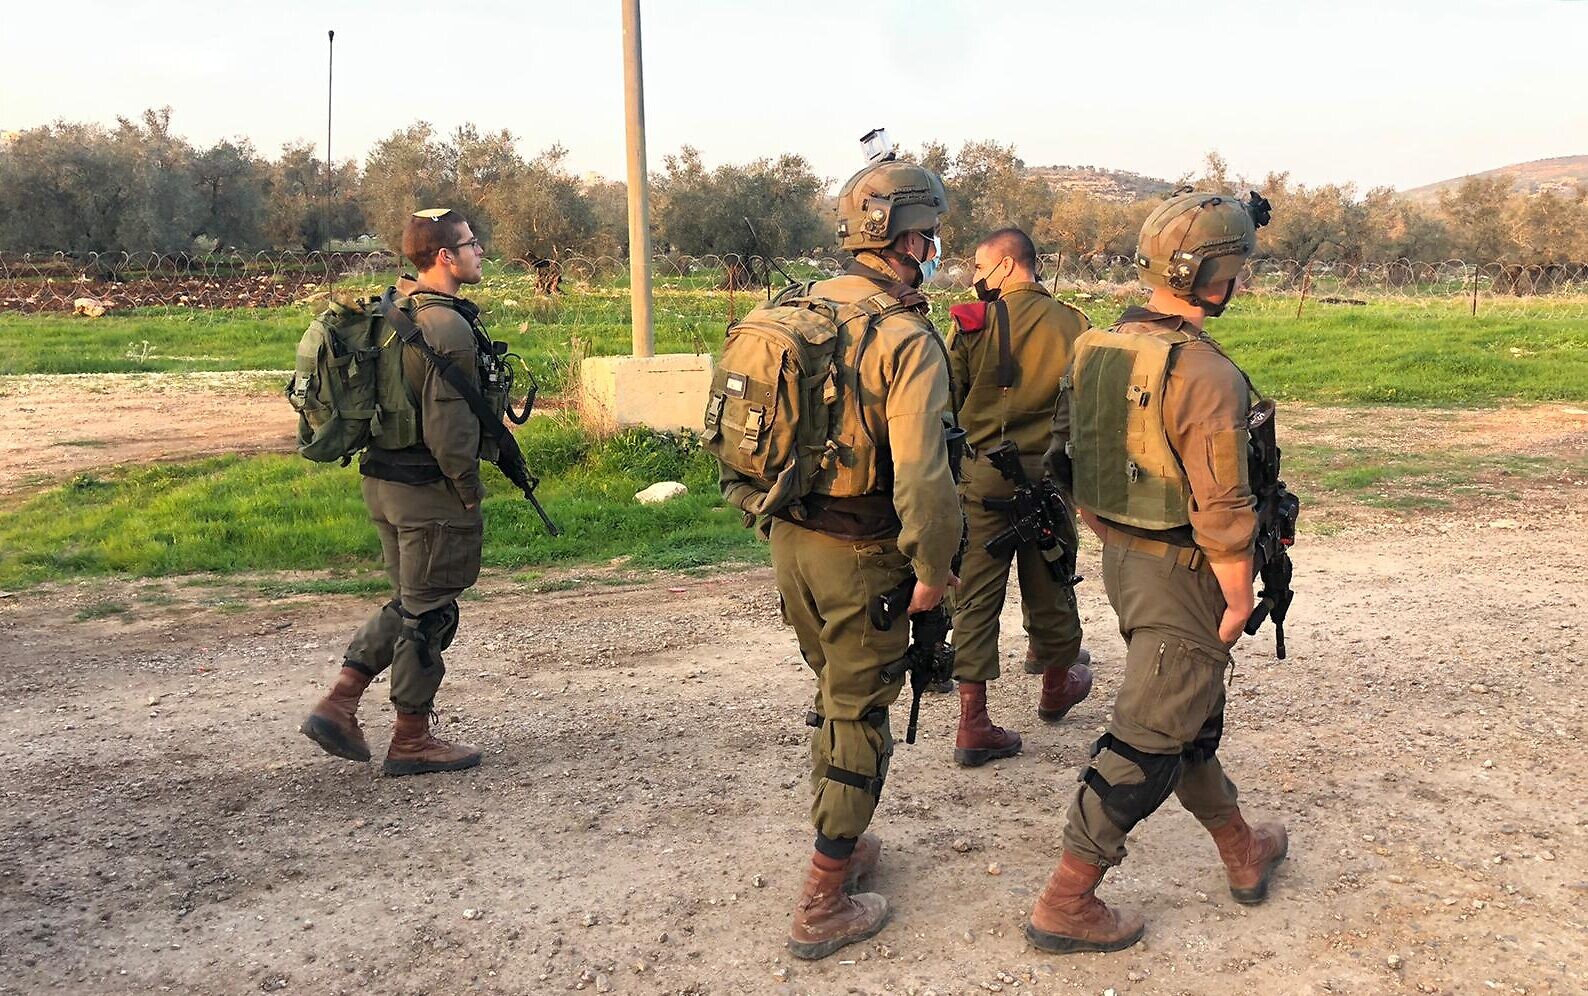 Солдаты на улице Израиля. Солдаты Израиля ведут учения. Израильский солдат на рельсах. Солдат ЦАХАЛ С саблей косой.